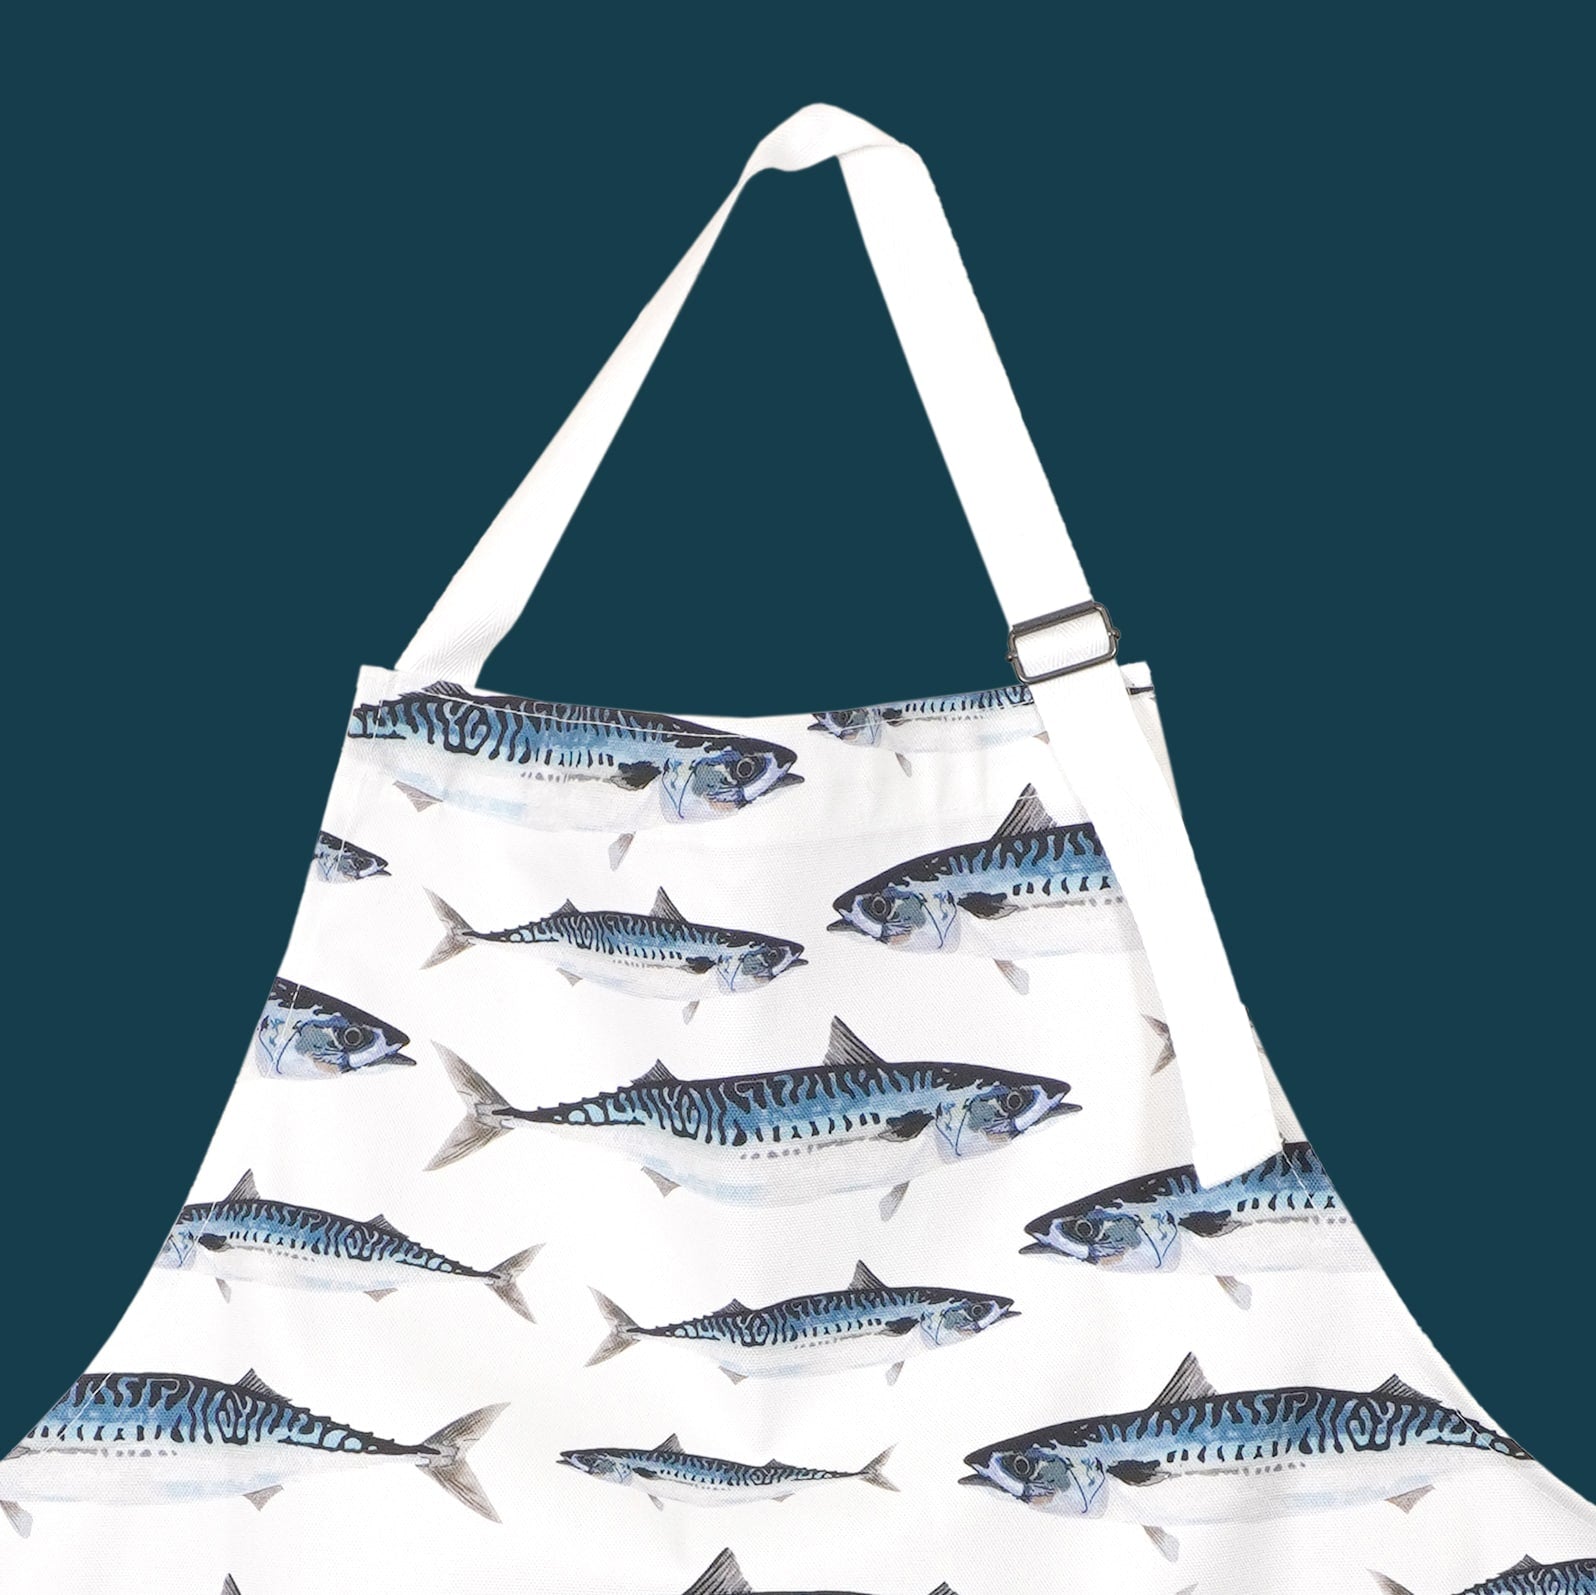 Mackerel illustrated apron bringing seaside charm